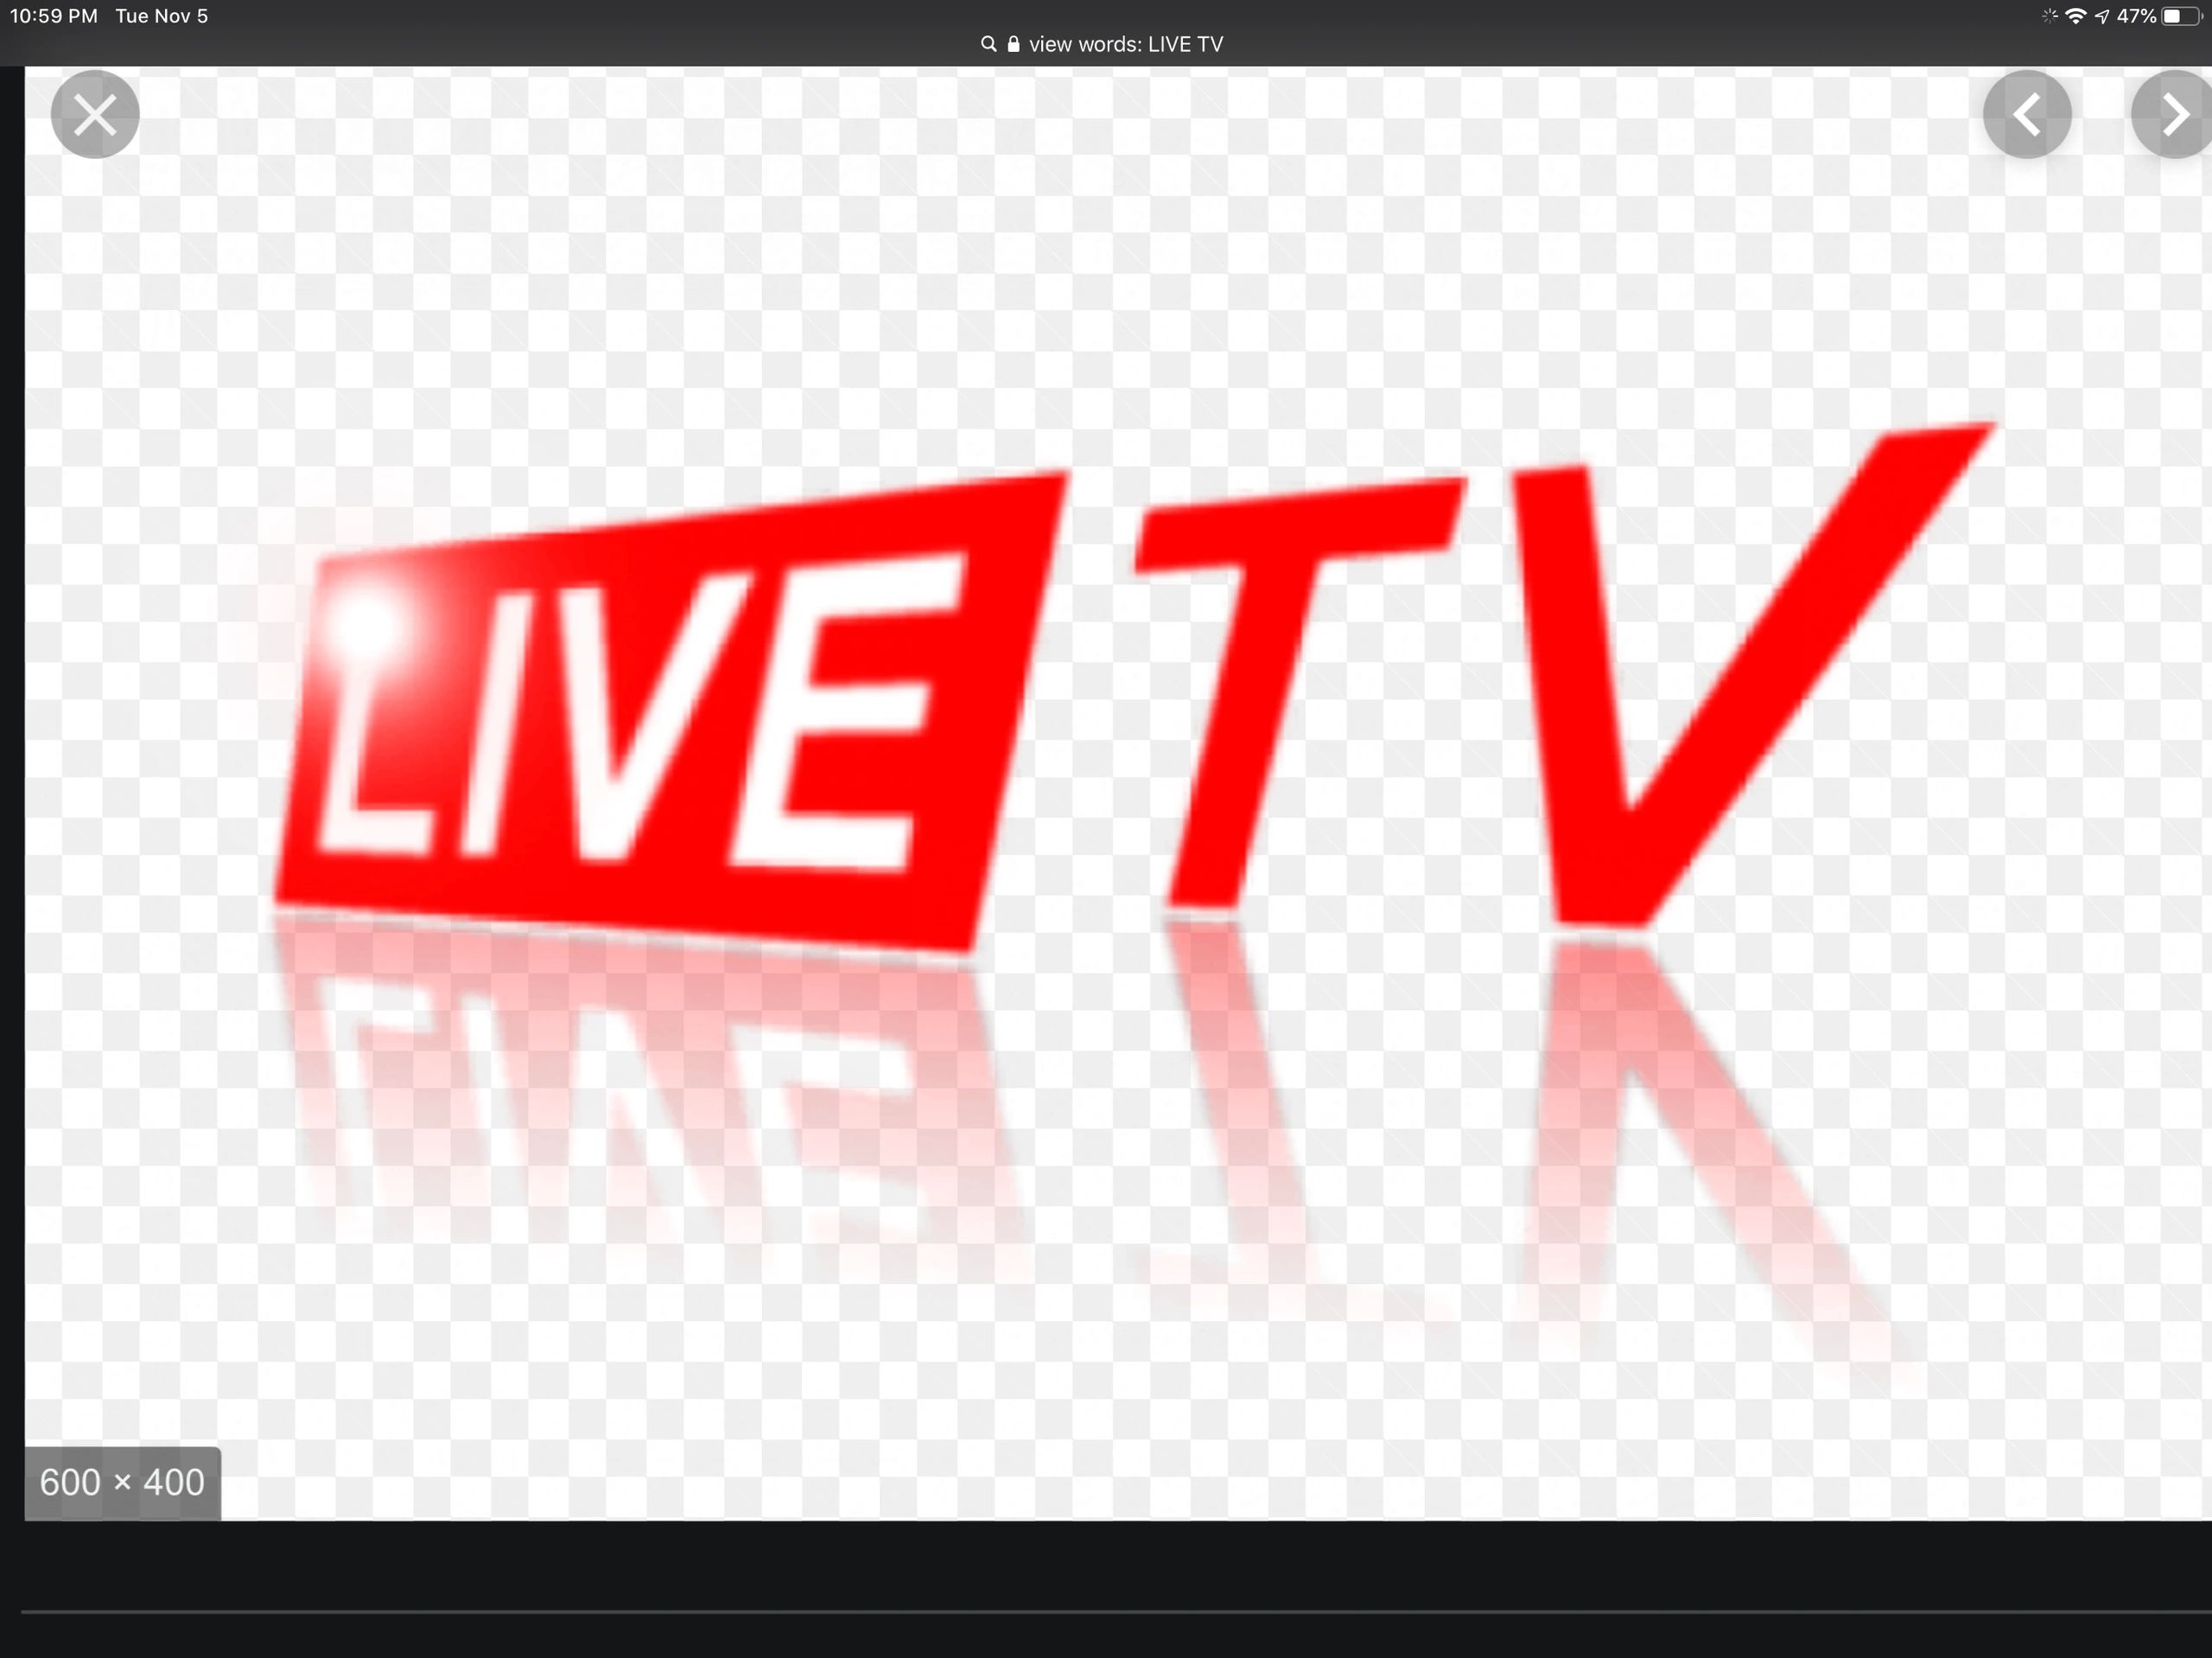 Livetv 769 me. Лайв ТВ. Live TV logo. Live. Live Now.